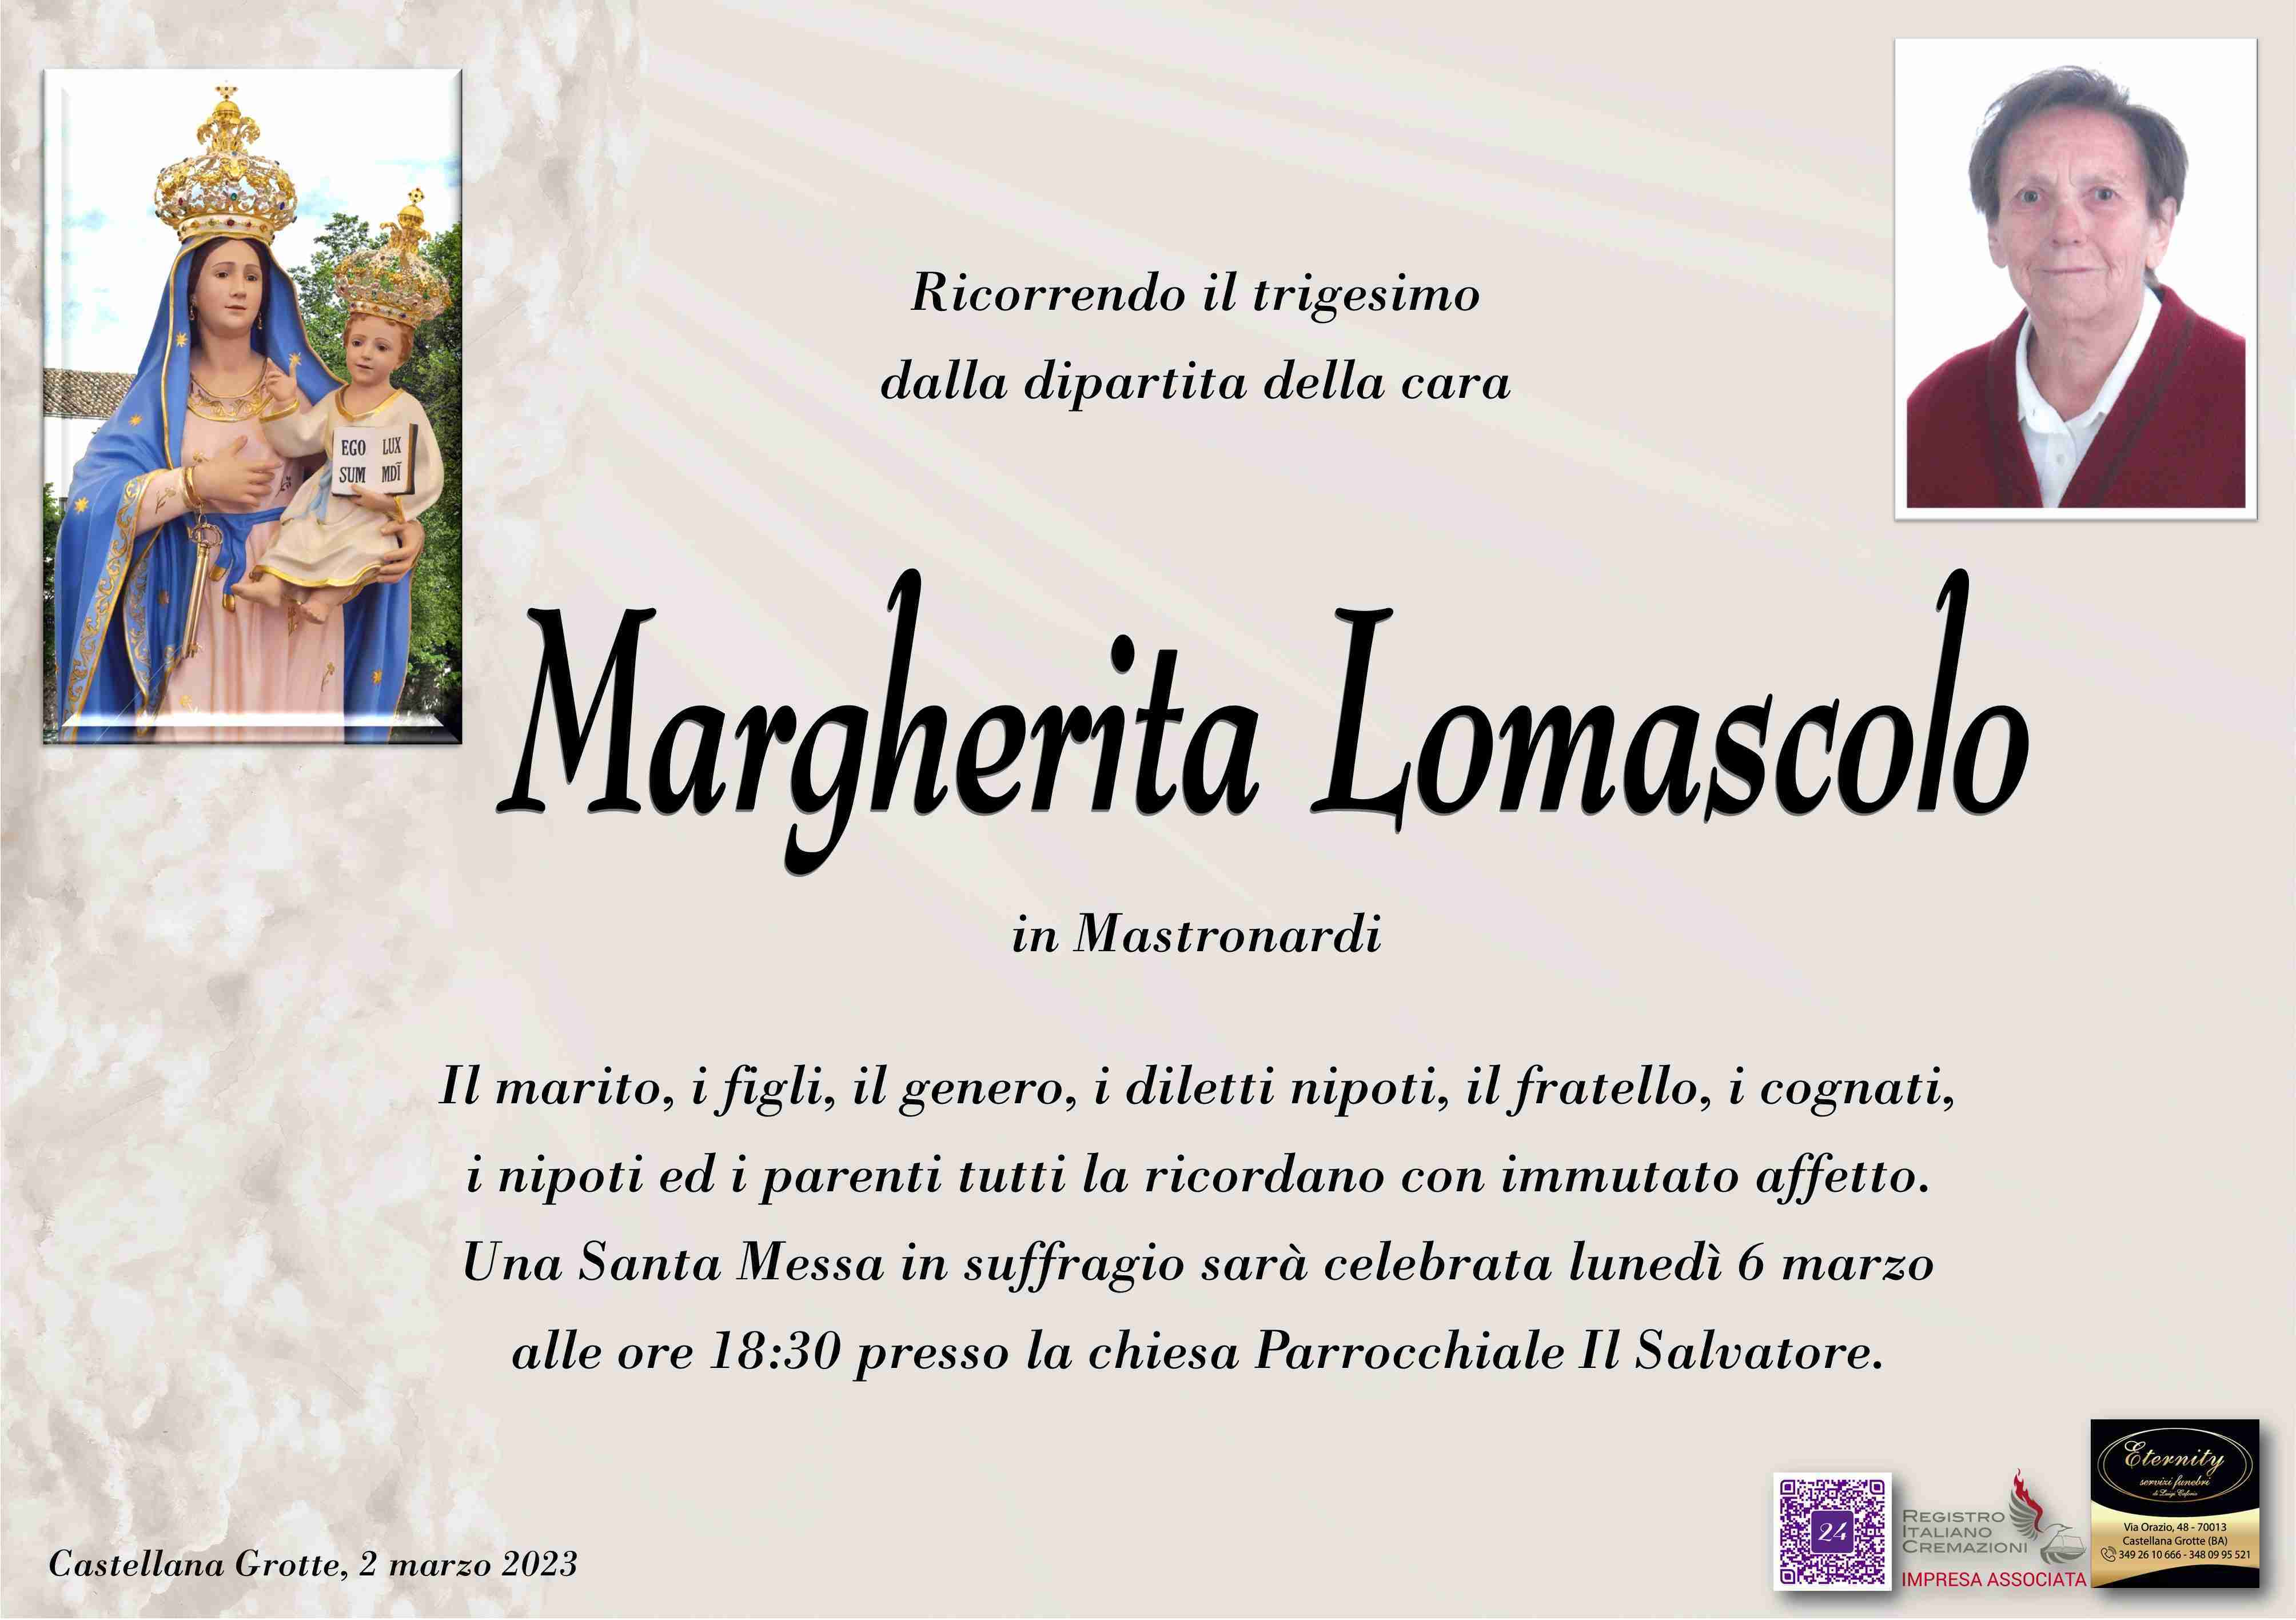 Margherita Lomascolo